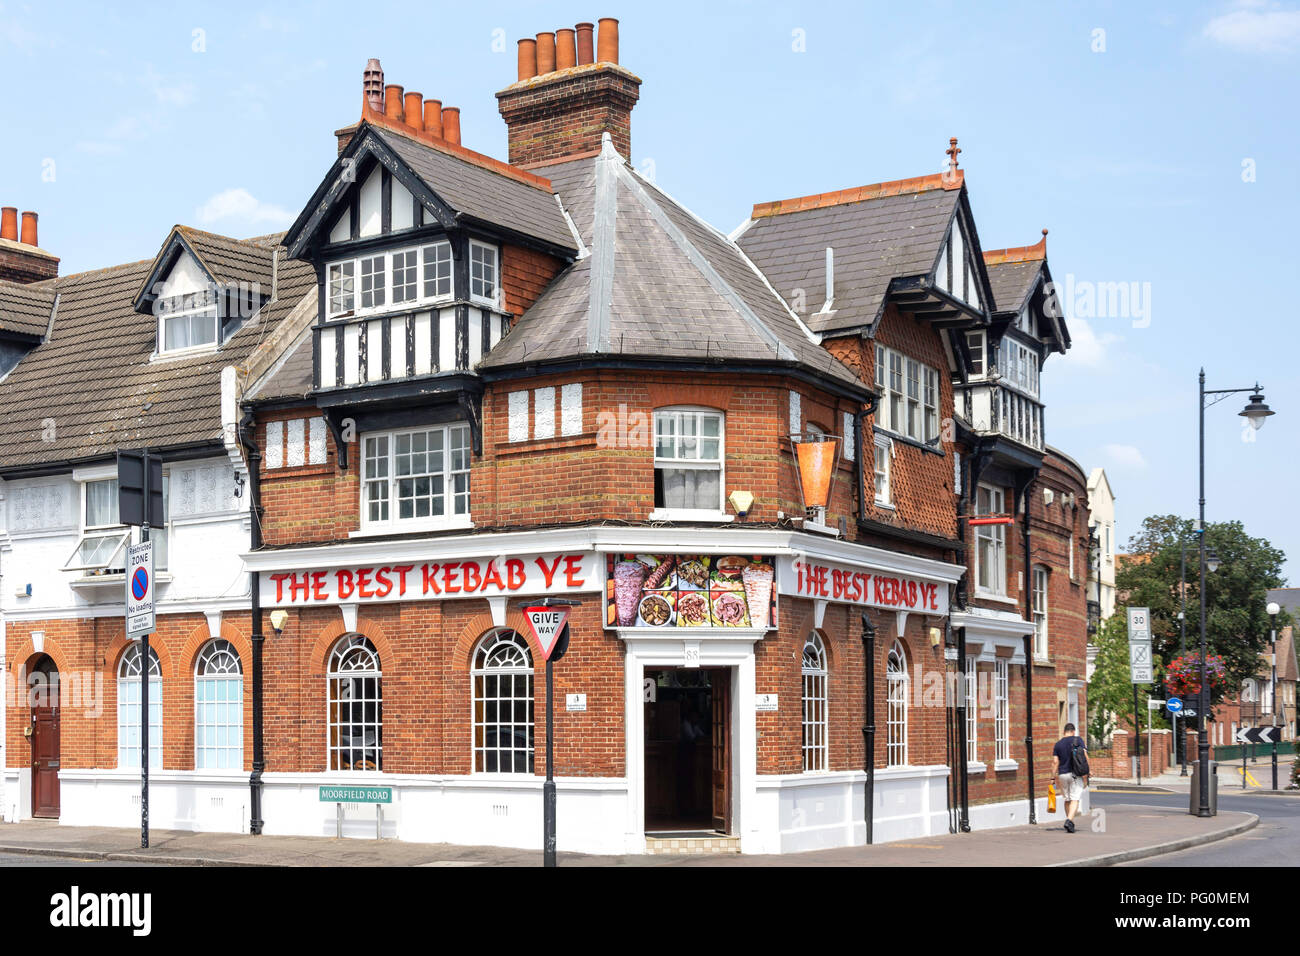 Il miglior ristorante di kebab, High Street, London, London Borough of Bromley, Greater London, England, Regno Unito Foto Stock